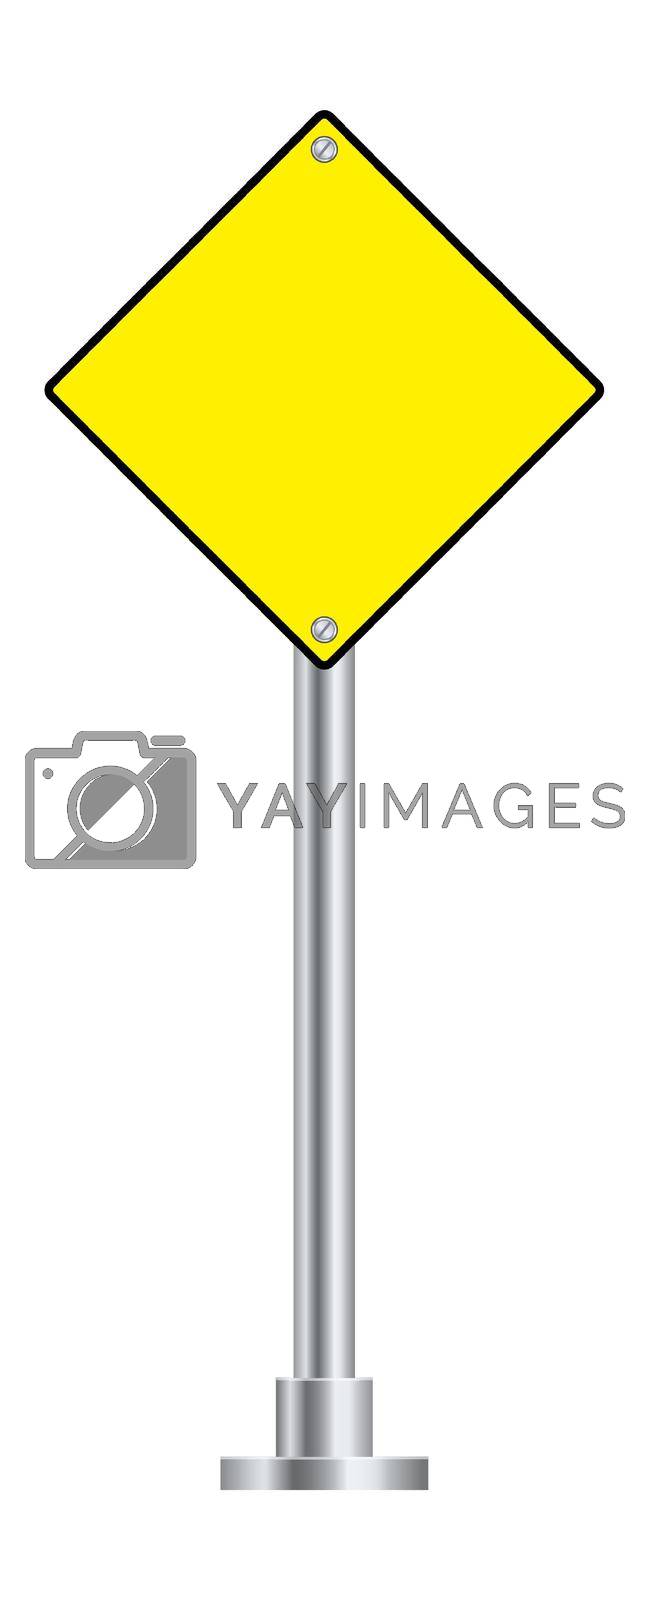 Royalty free image of Priority road sign. Blank yellow rhombus board by LadadikArt